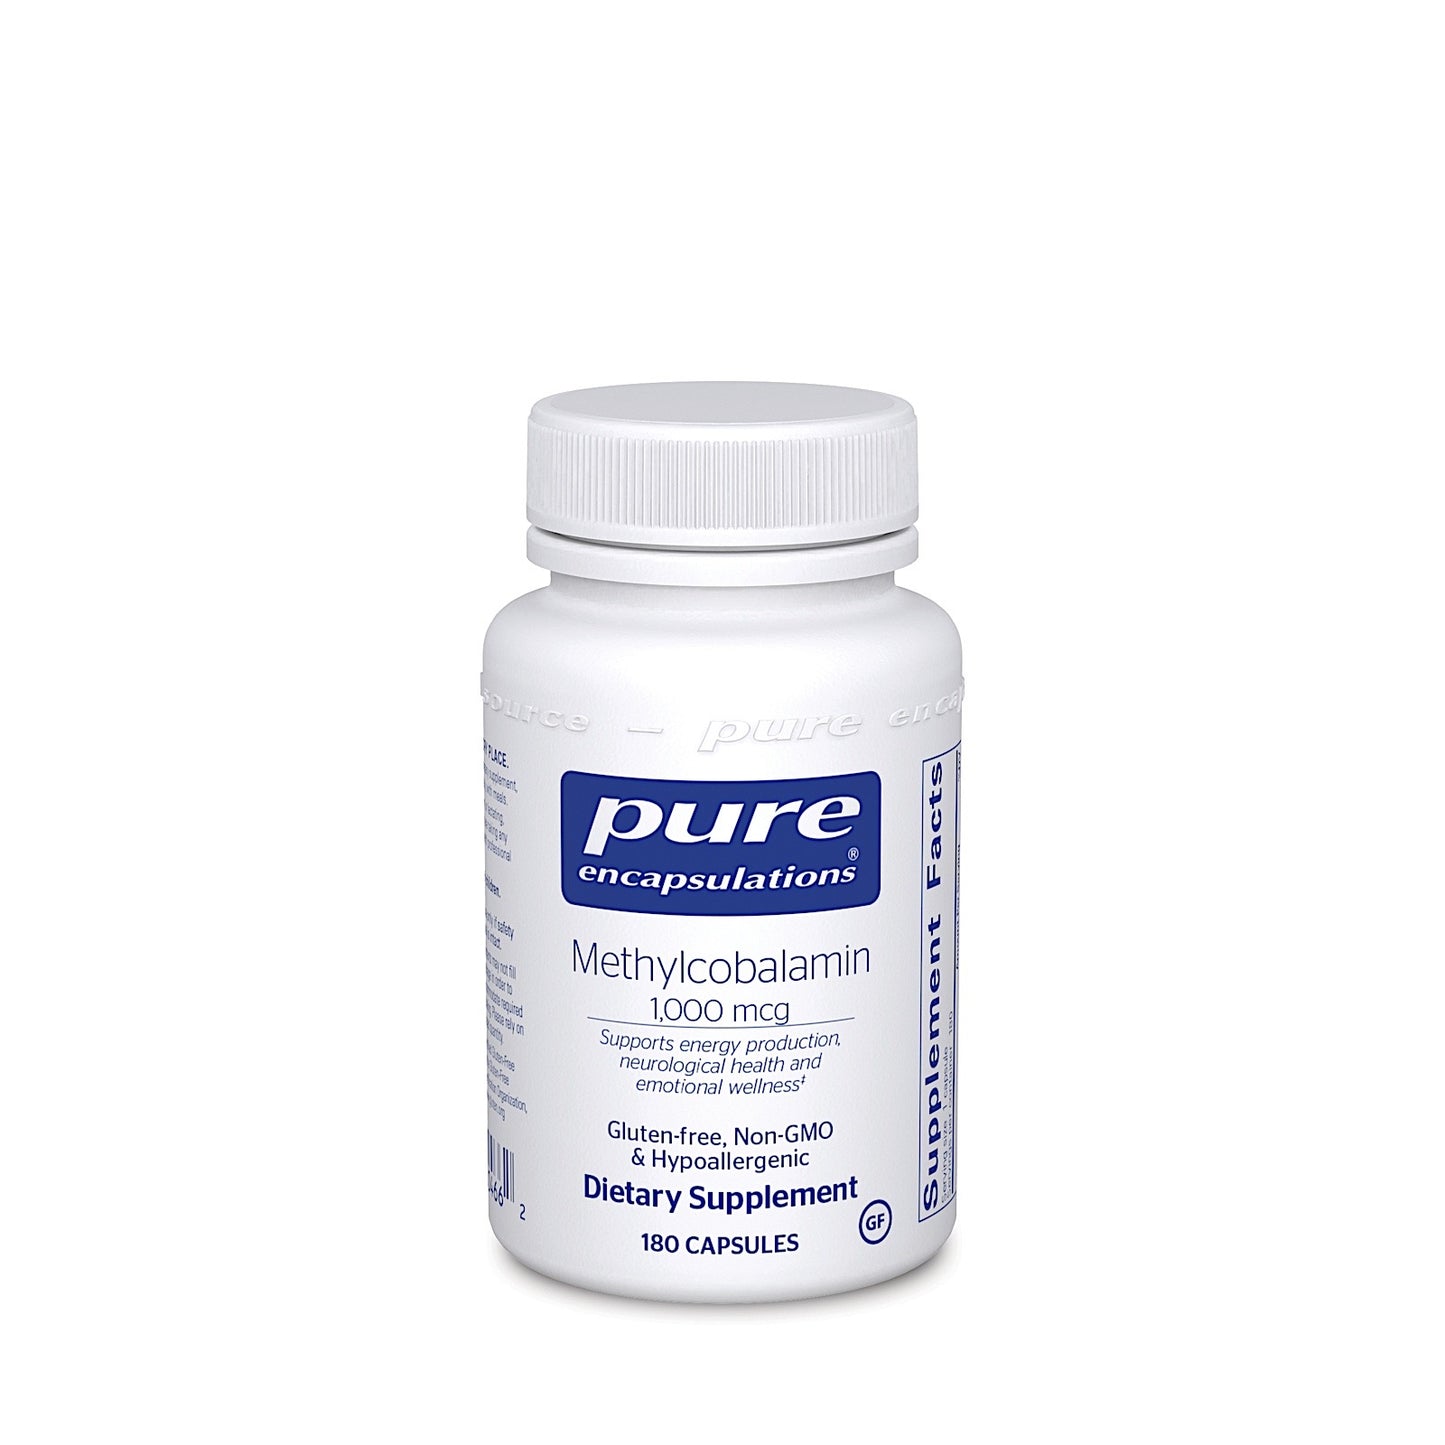 Pure Encapsulations, Methylcobalamin 1000 mcg, 180 Capsules - 766298004662 | Hilife Vitamins